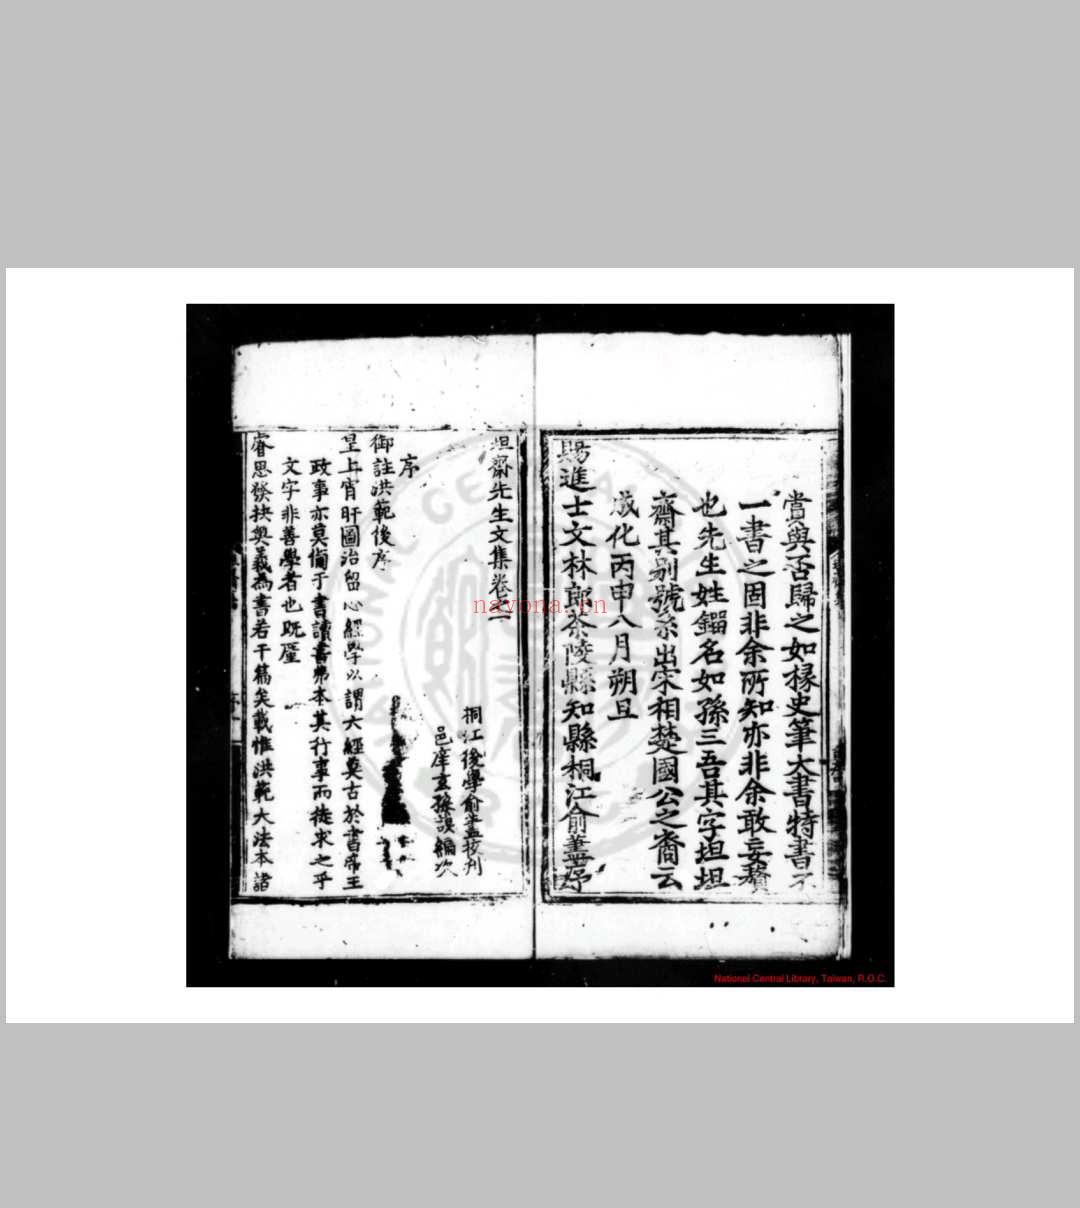 坦斋先生文集 (明)刘三吾撰 明成化丙申(十二年, 1476)茶陵知县俞荩刊本